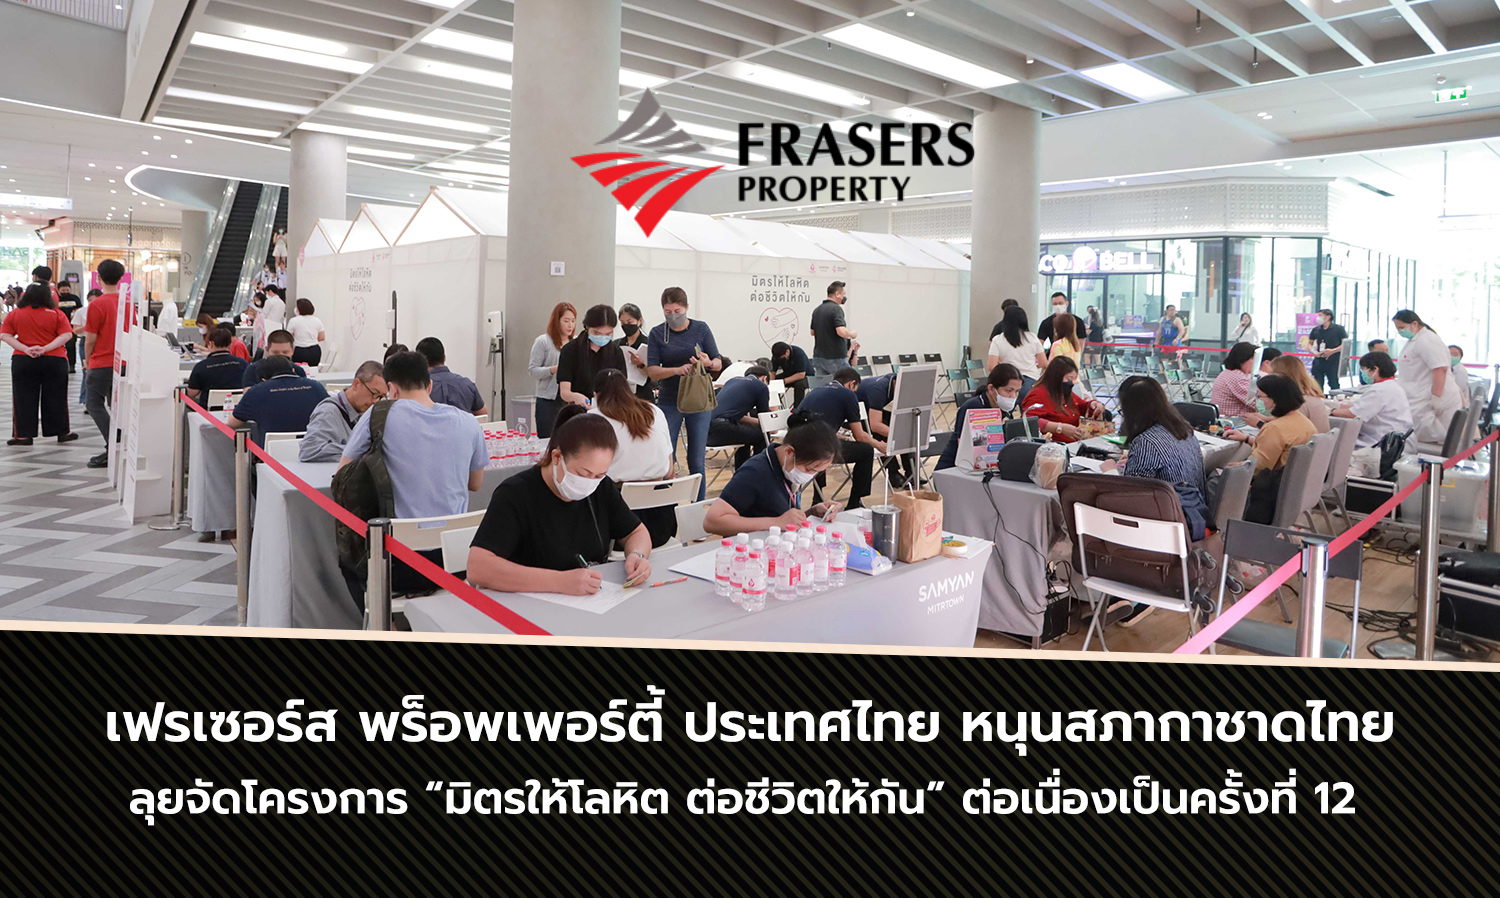 เฟรเซอร์ส พร็อพเพอร์ตี้ ประเทศไทย หนุนสภากาชาดไทย ลุยจัดโครงการ “มิตรให้โลหิต ต่อชีวิตให้กัน” ต่อเนื่องเป็นครั้งที่ 12 